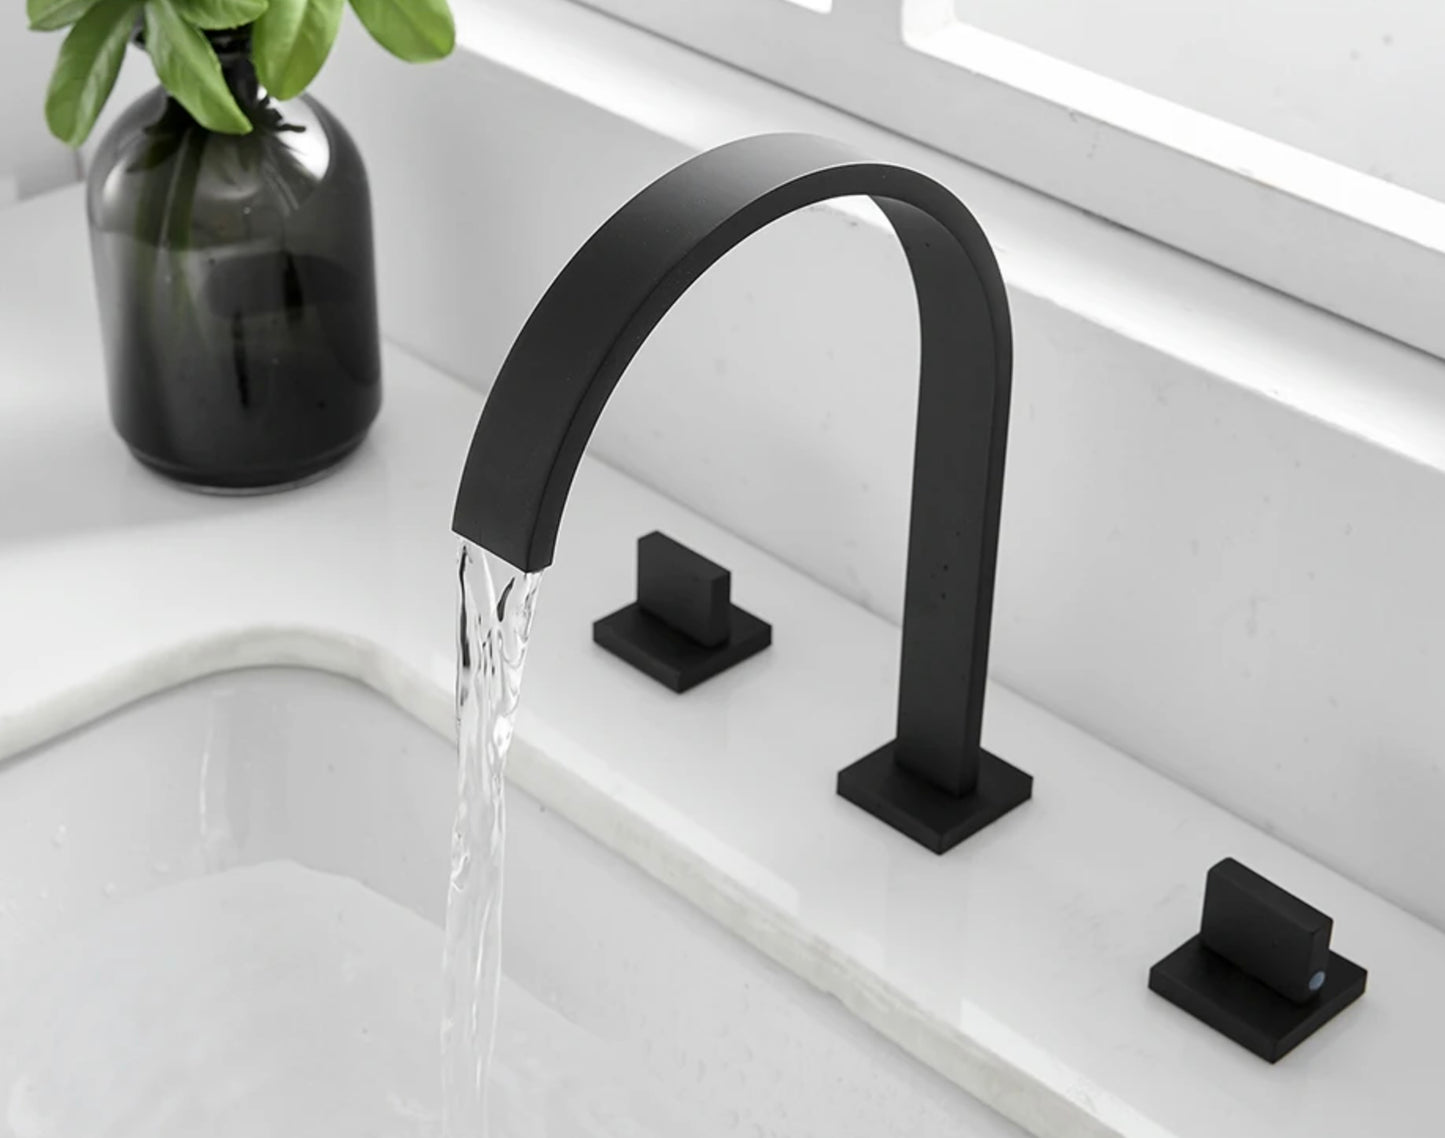 SaniSupreme Washbasin tap - Bath tap San Marino bath built-in - surface-mounted mixer tap model matt black